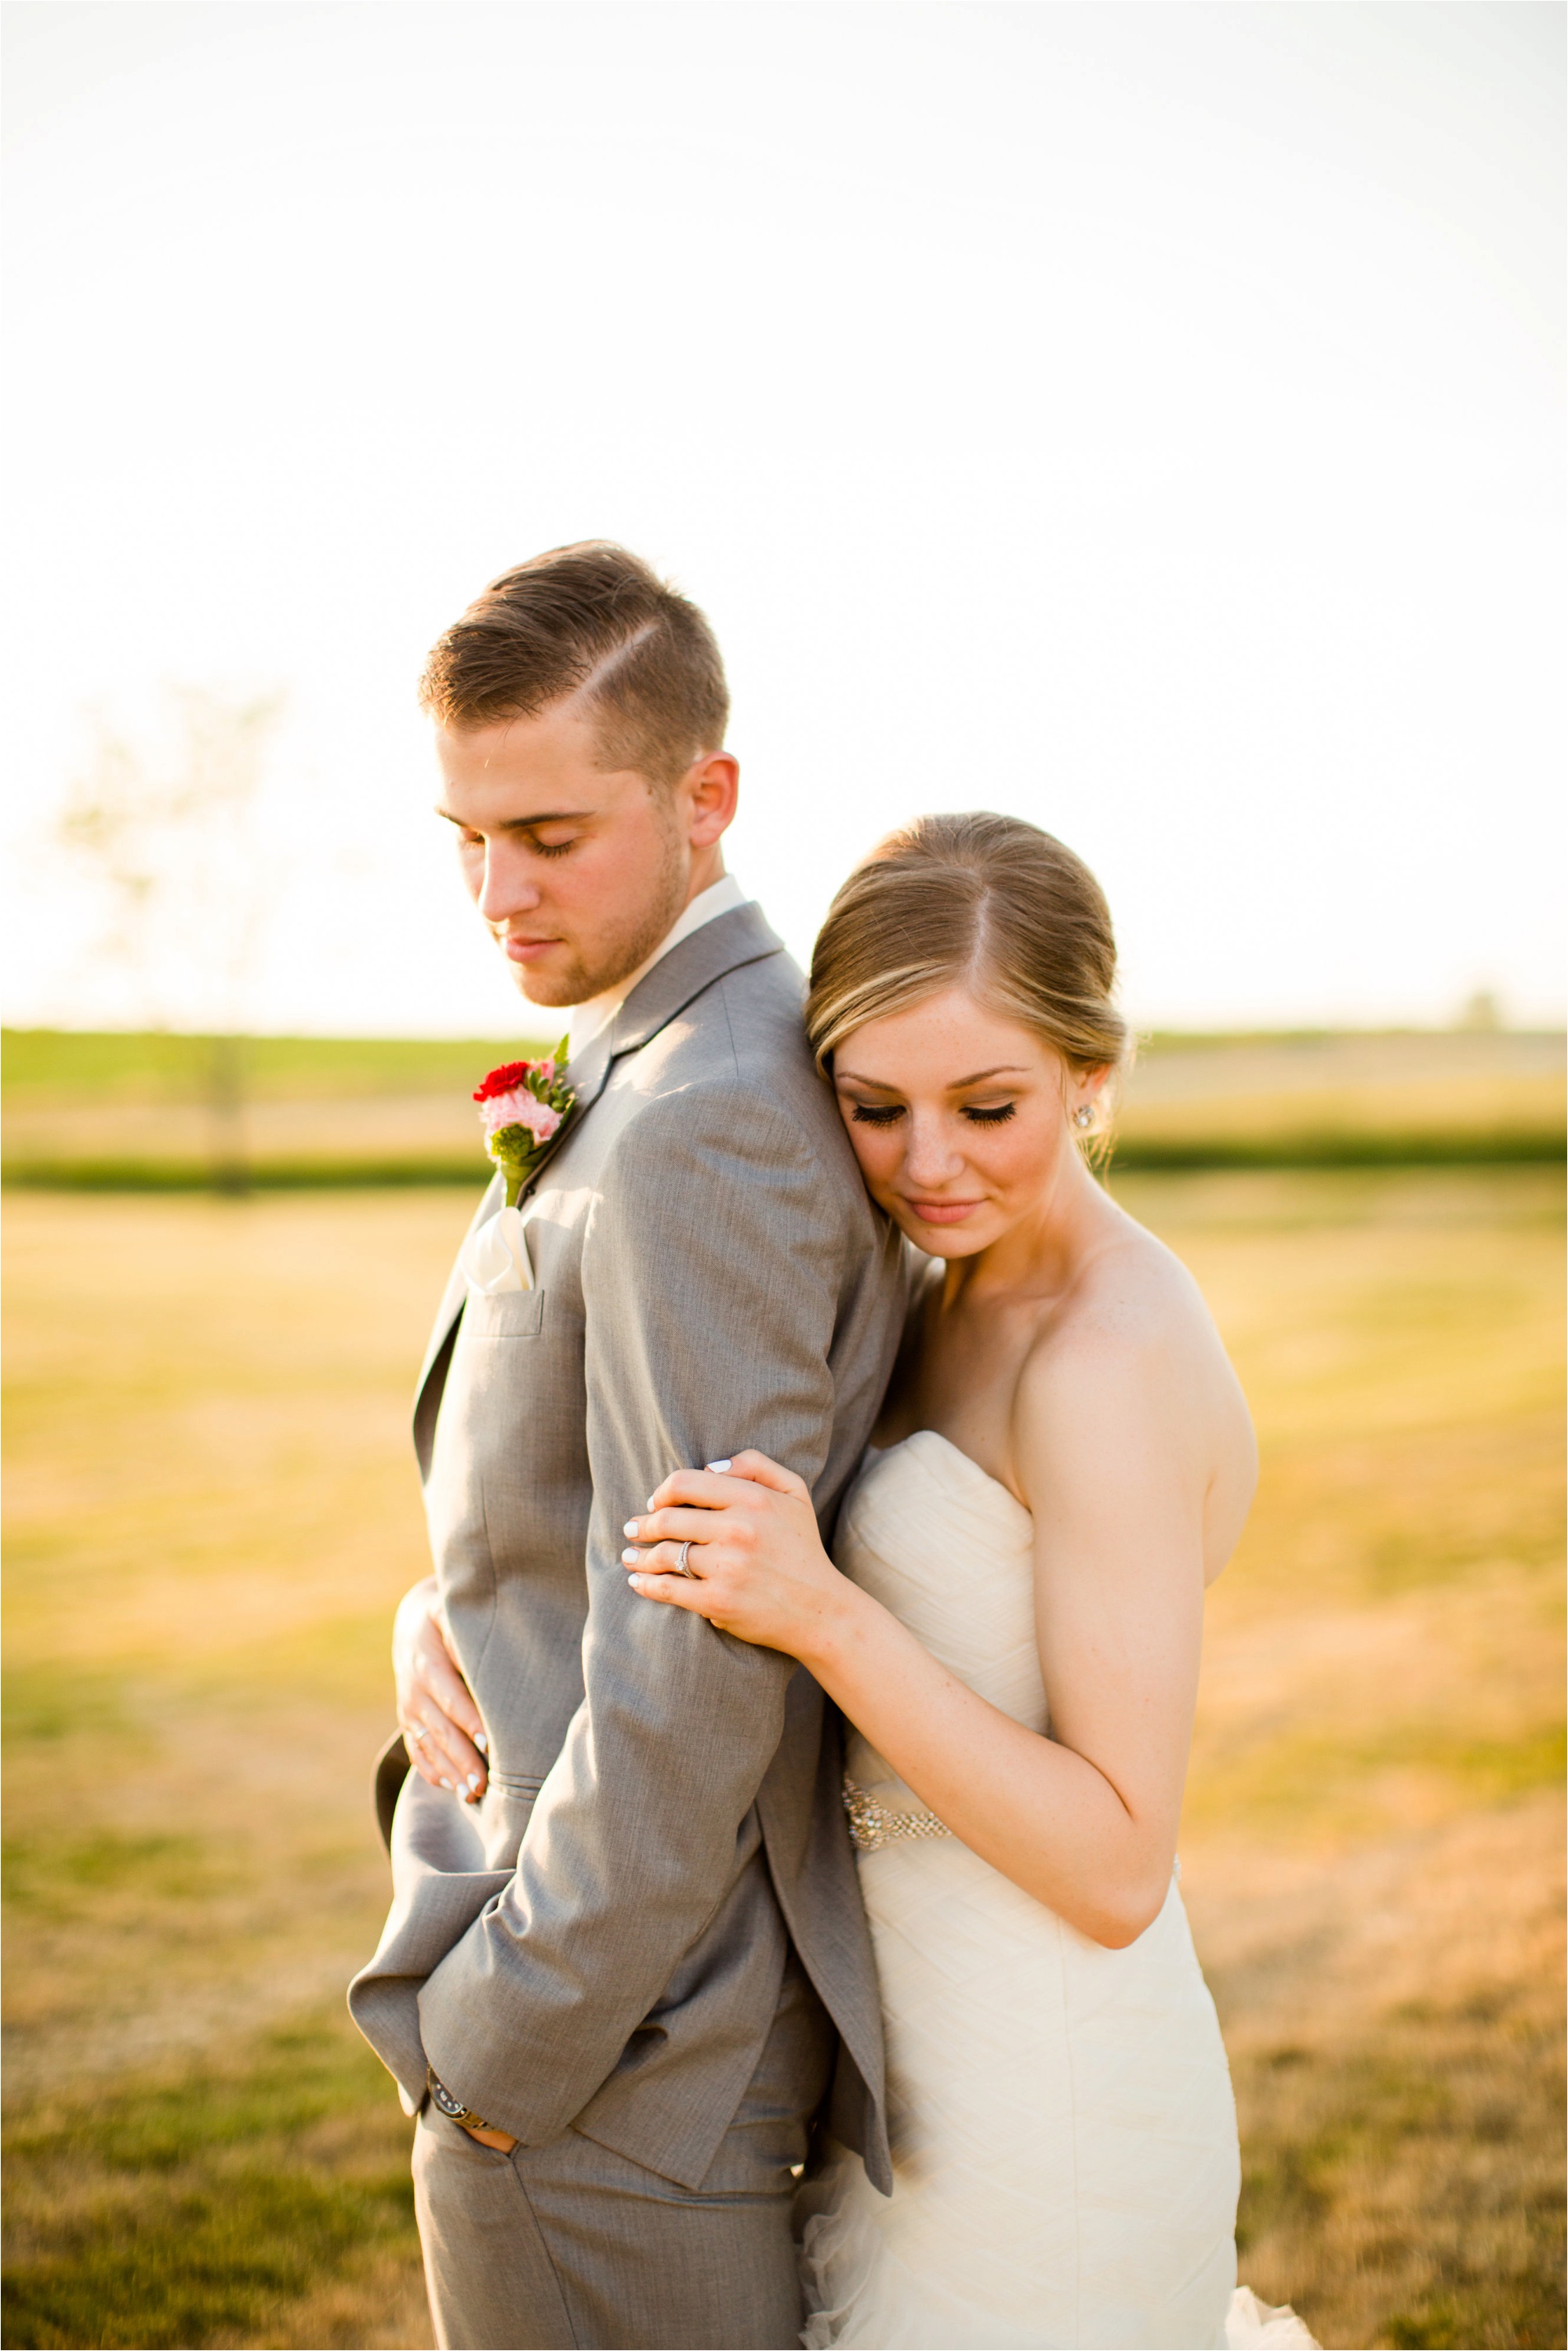 Caitlin and Luke Photography, Bloomington Normal Wedding Photographers, Illinois Wedding Photographers, Illinois Husband and Wife Wedding Photography Team_0351.jpg